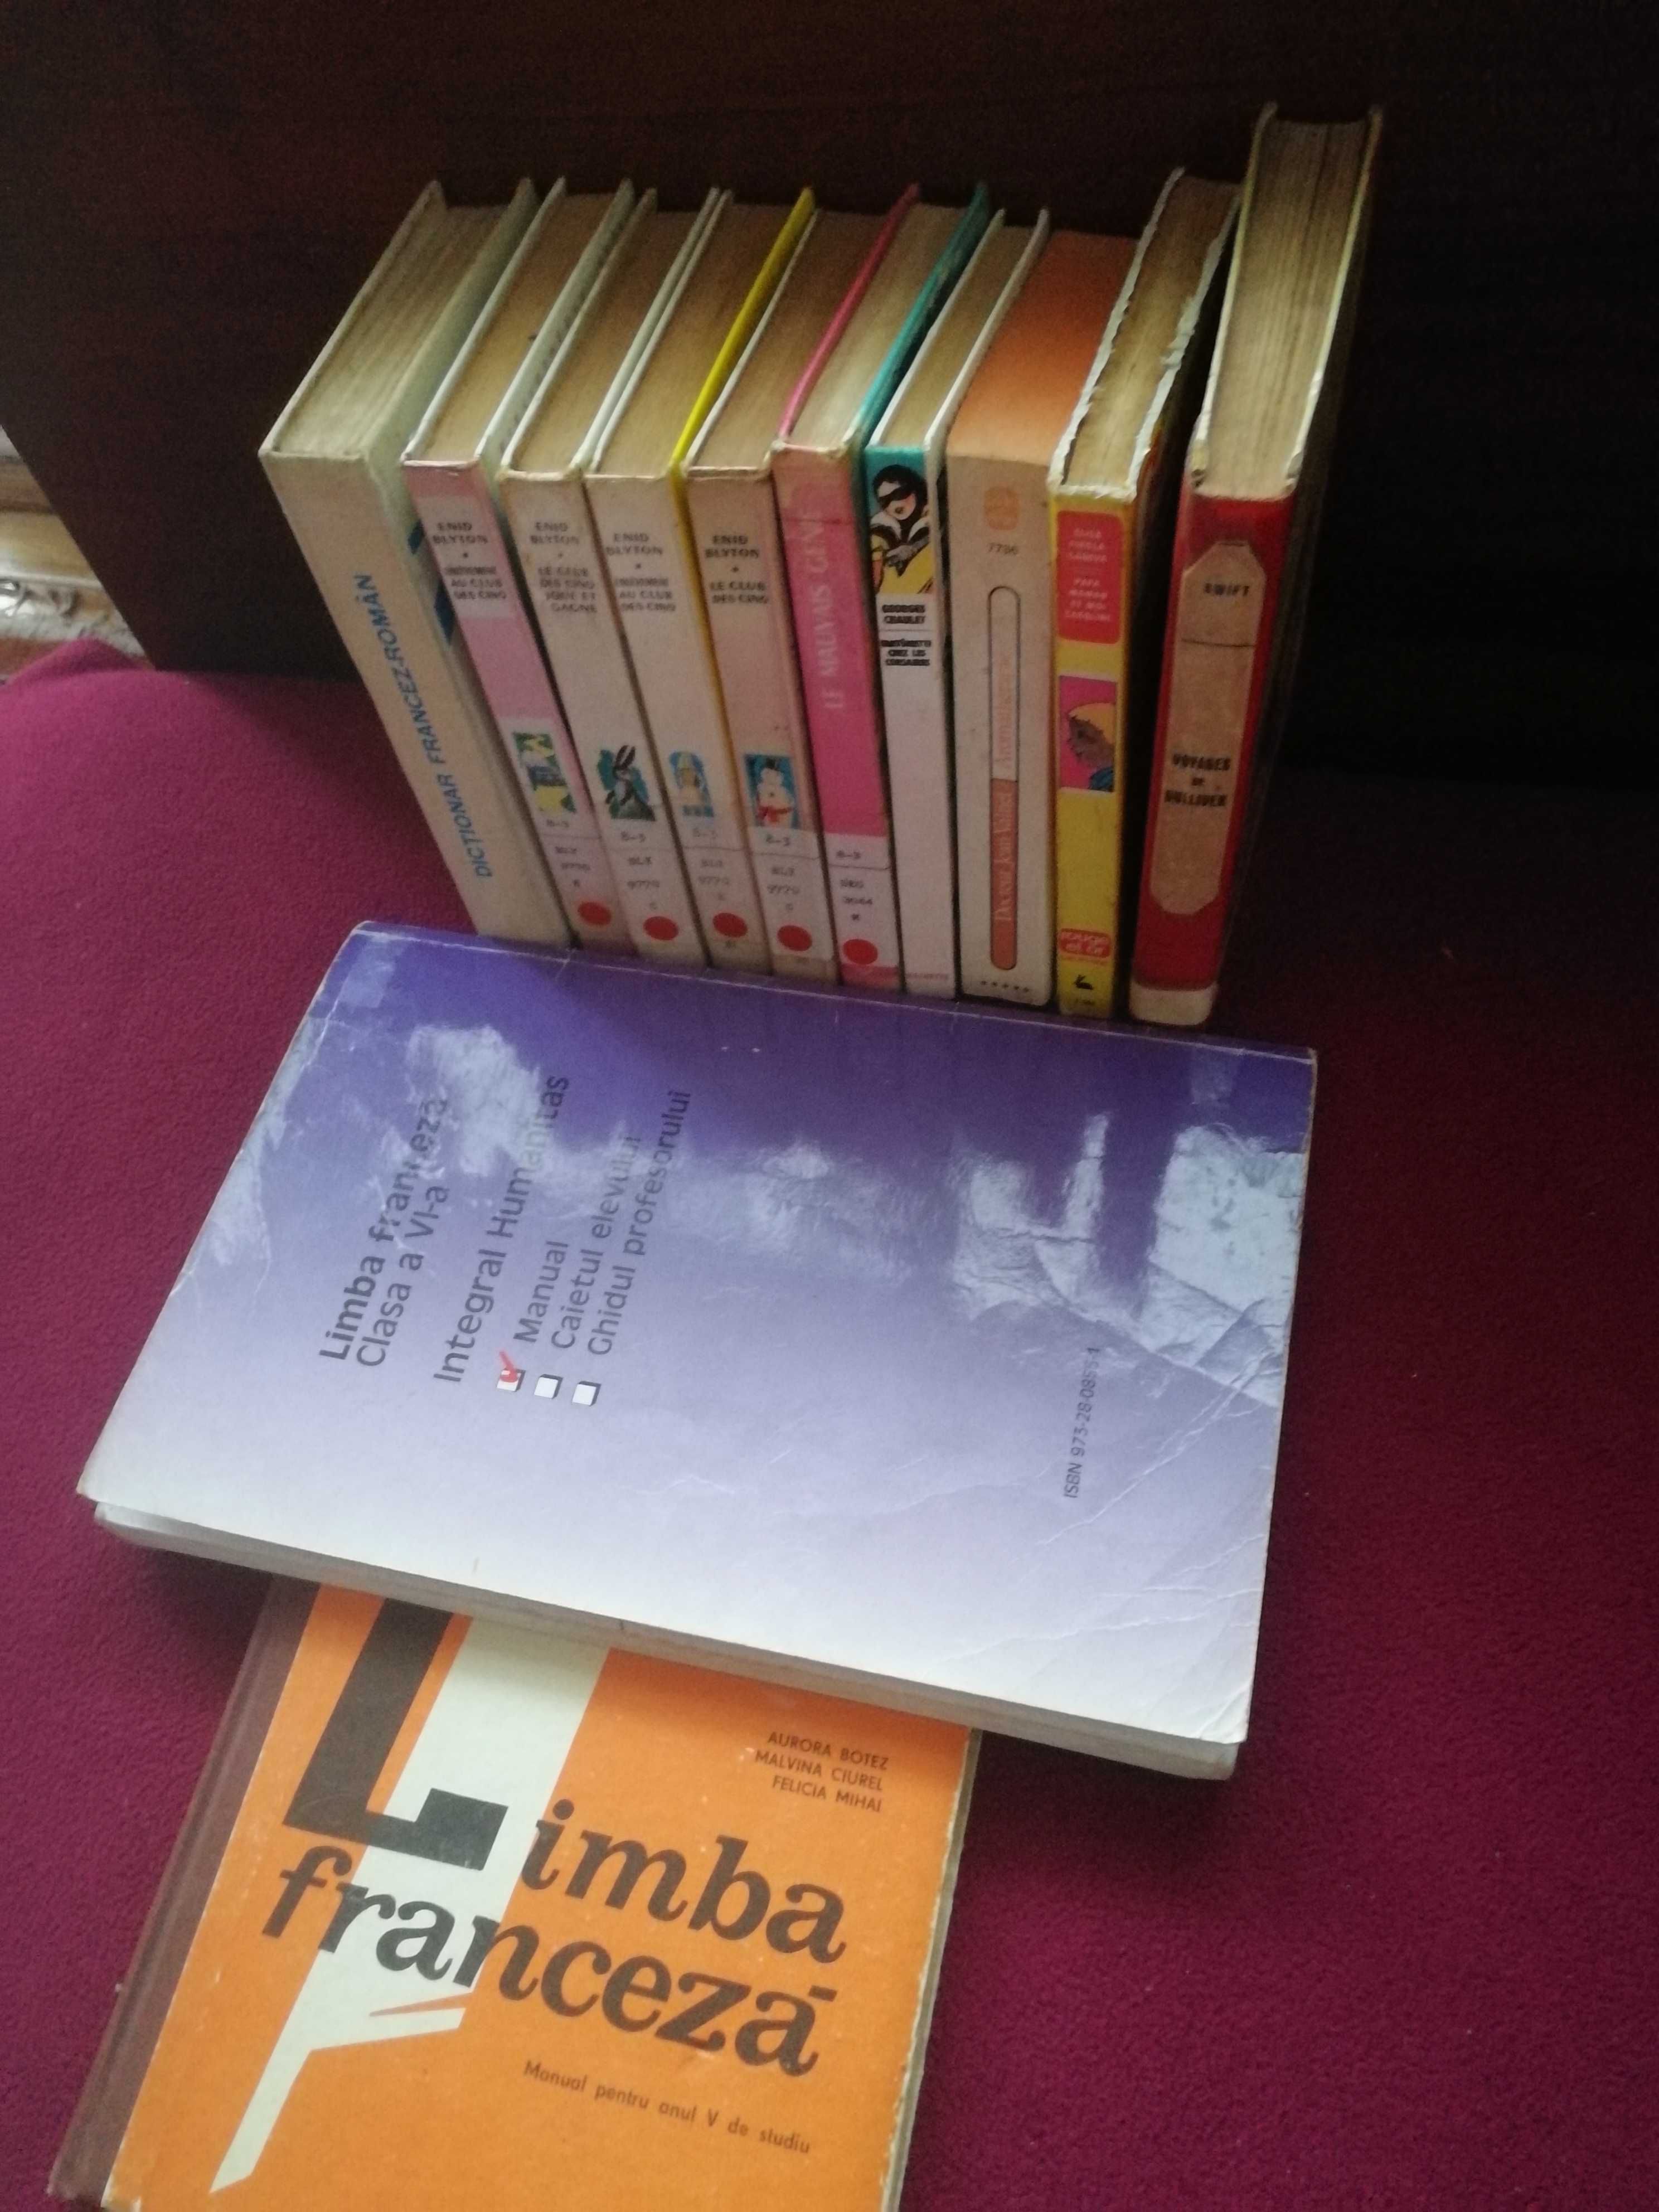 Cărți /romane noi (beletristică) în limba rusă și în limba franceză